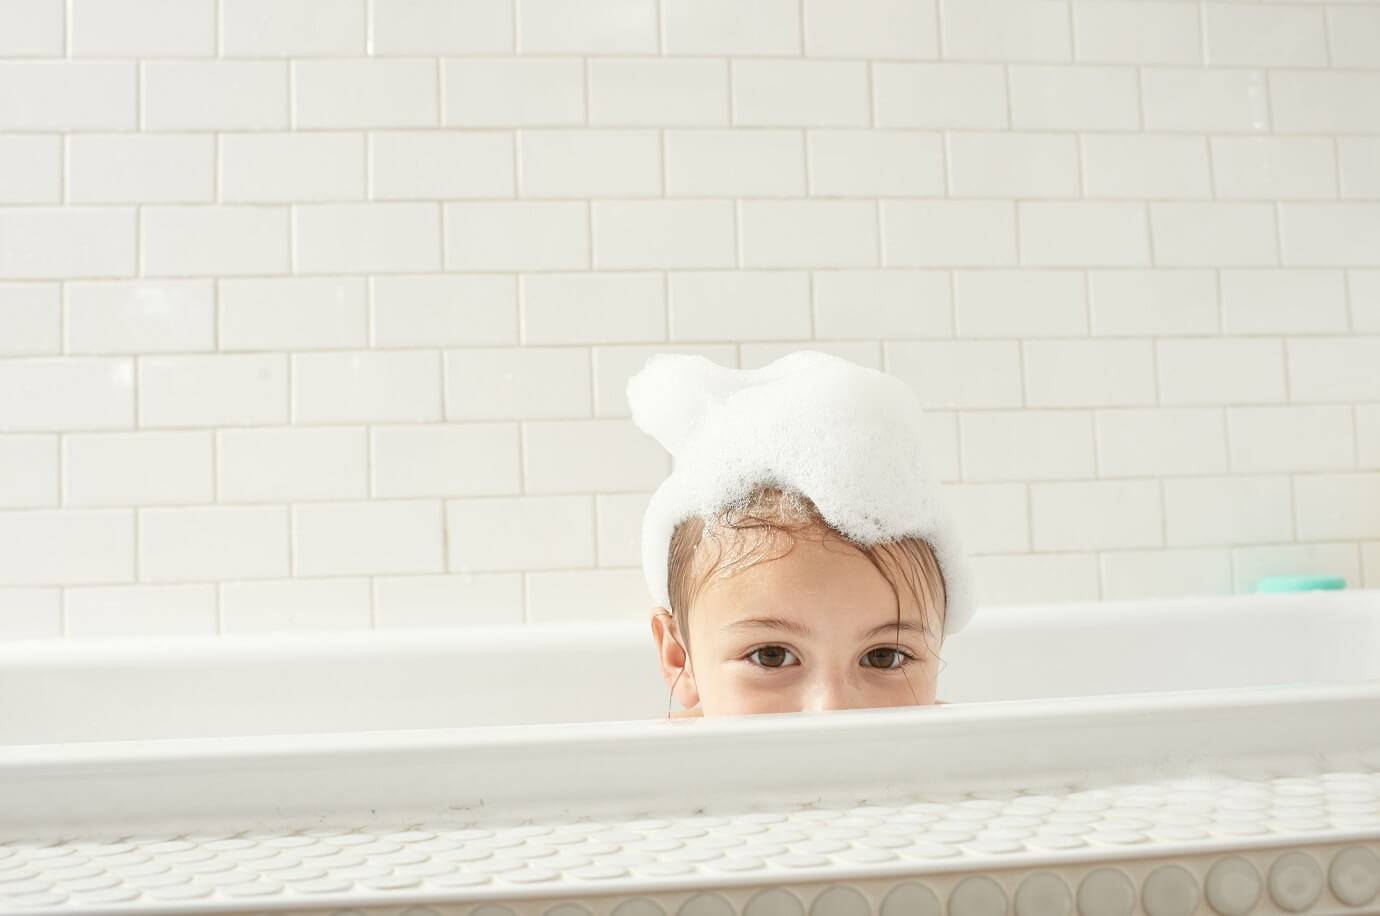 Что делать, если ребенок боится купаться и мыть голову: советы психолога